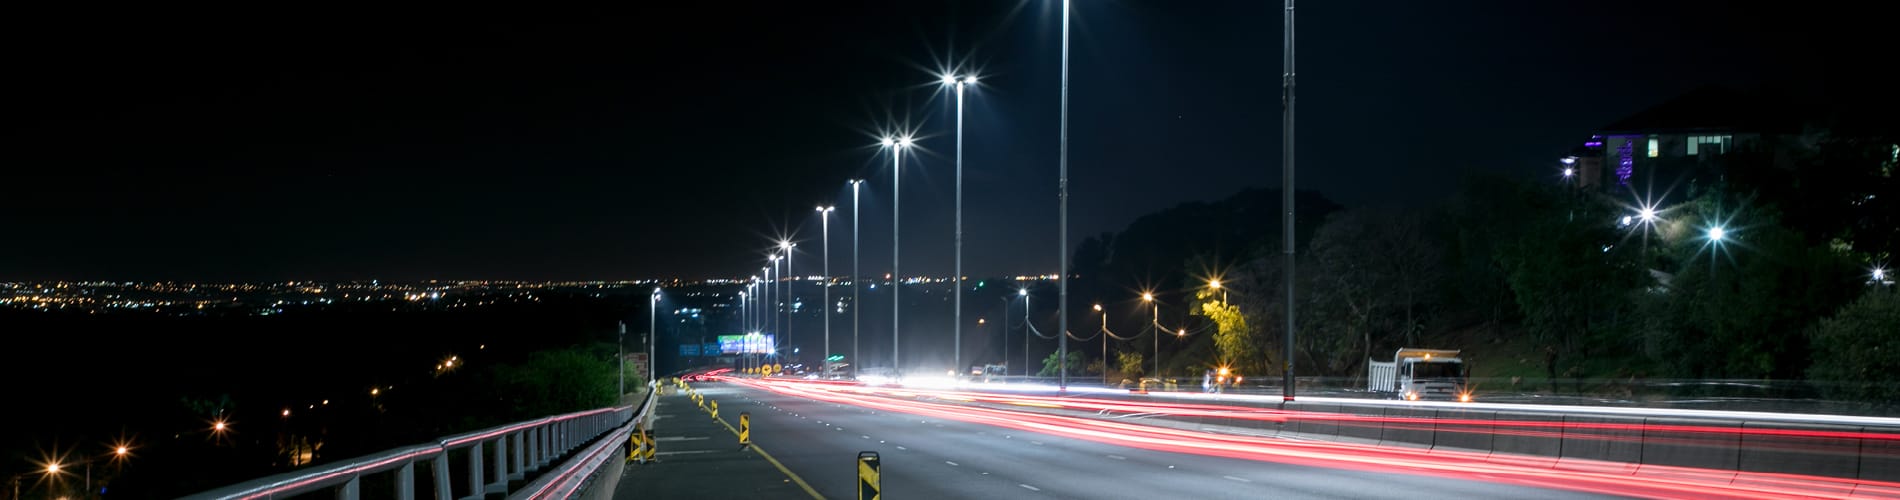 GenLux Lighting Roadway Highway Lights